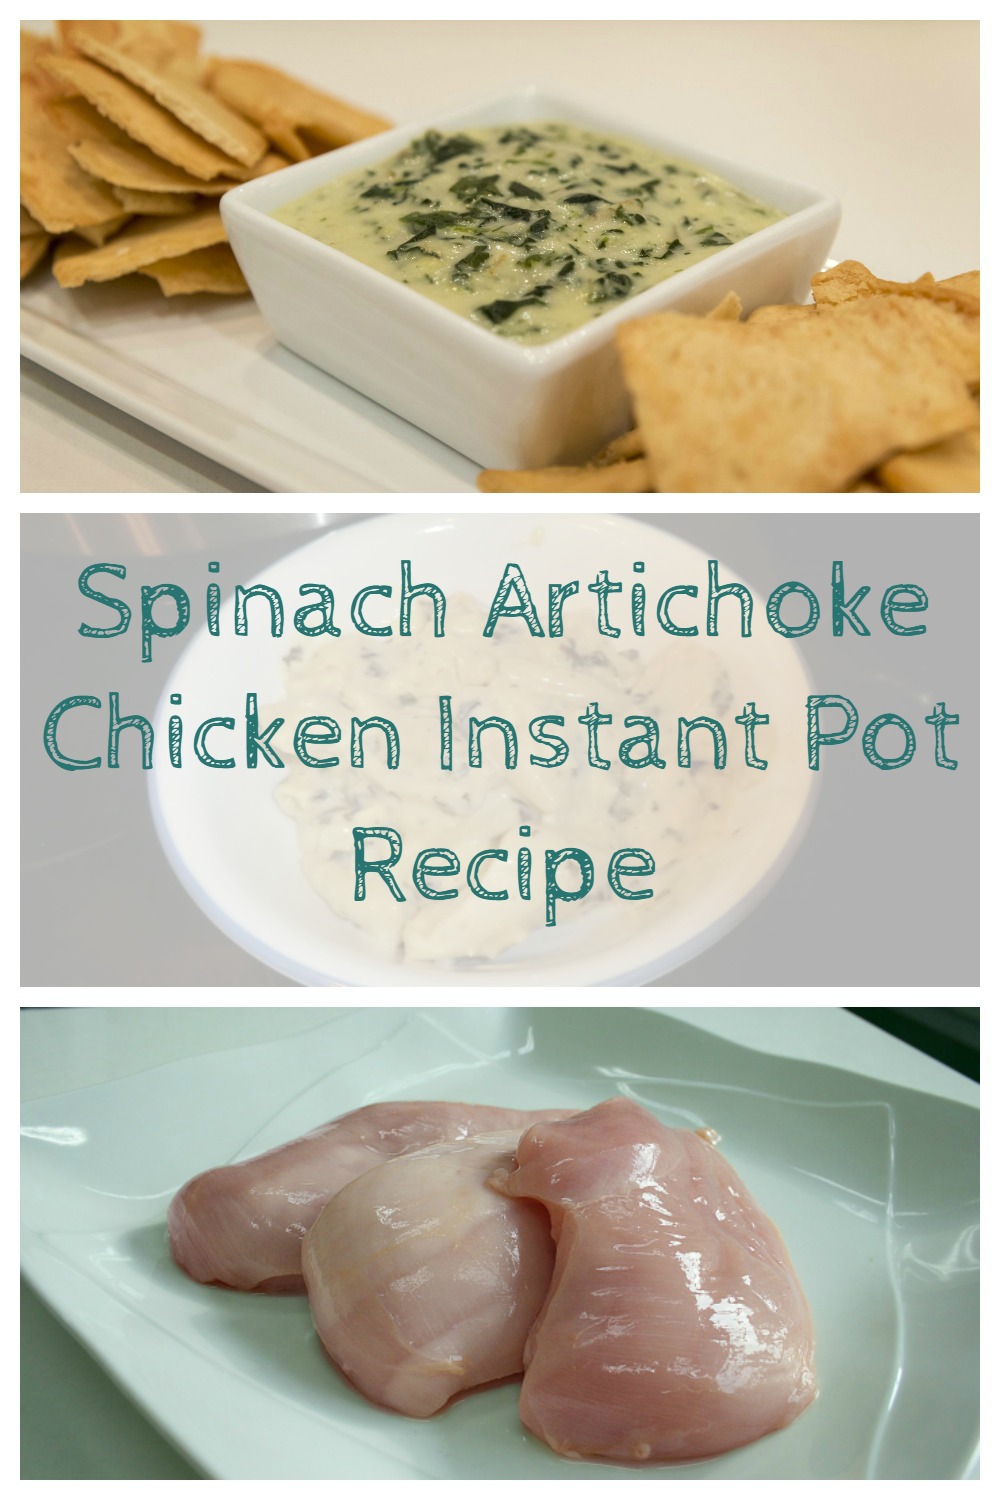 Spinach Artichoke Chicken Instant Pot Recipe